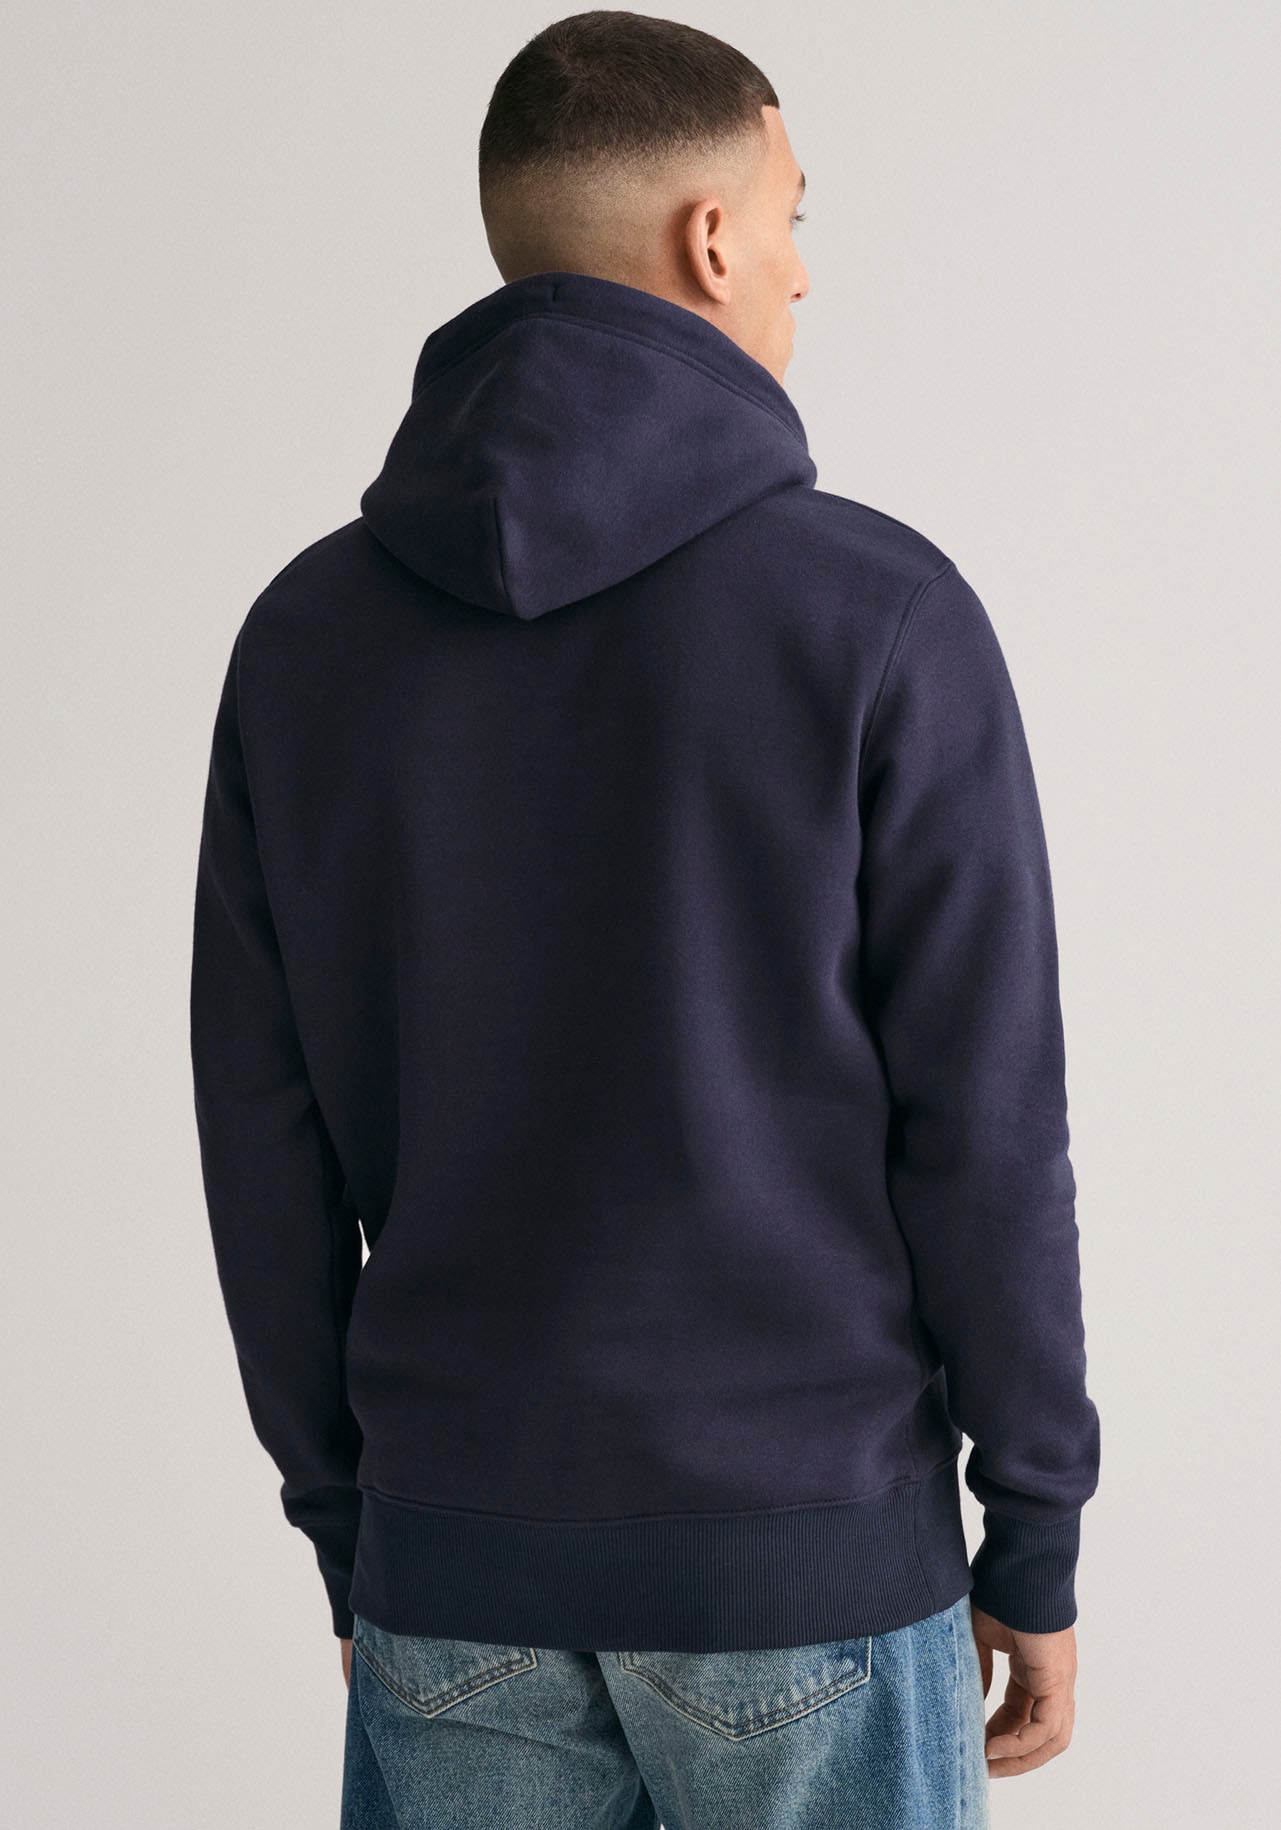 ➤ Sweatshirts versandkostenfrei - ohne Mindestbestellwert kaufen